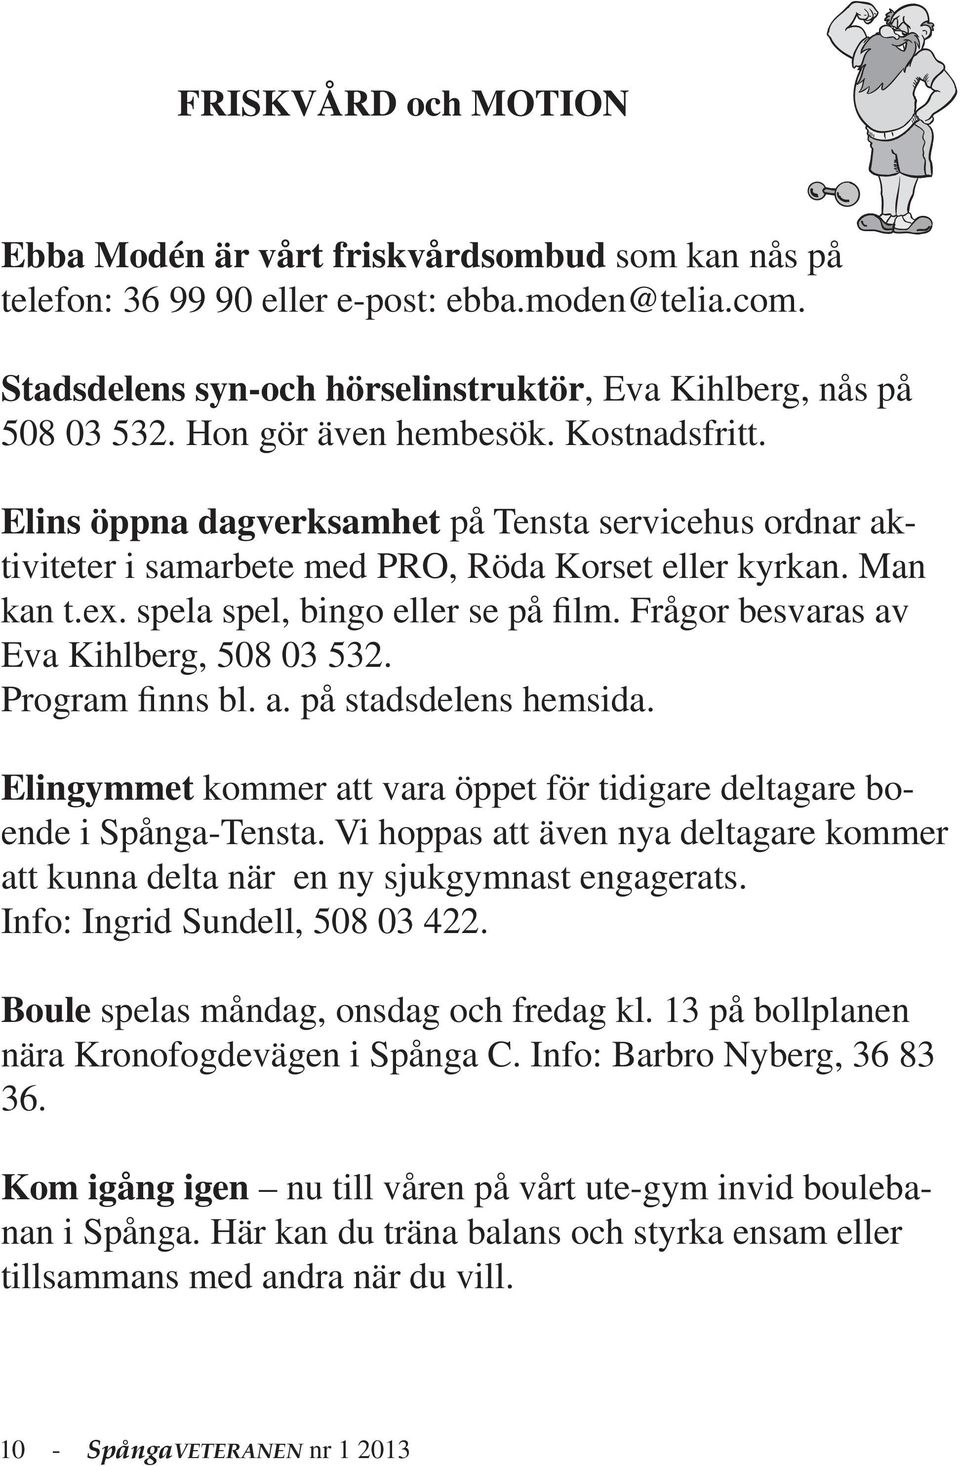 Frågor besvaras av Eva Kihlberg, 508 03 532. Program finns bl. a. på stadsdelens hemsida. Elingymmet kommer att vara öppet för tidigare deltagare boende i Spånga-Tensta.